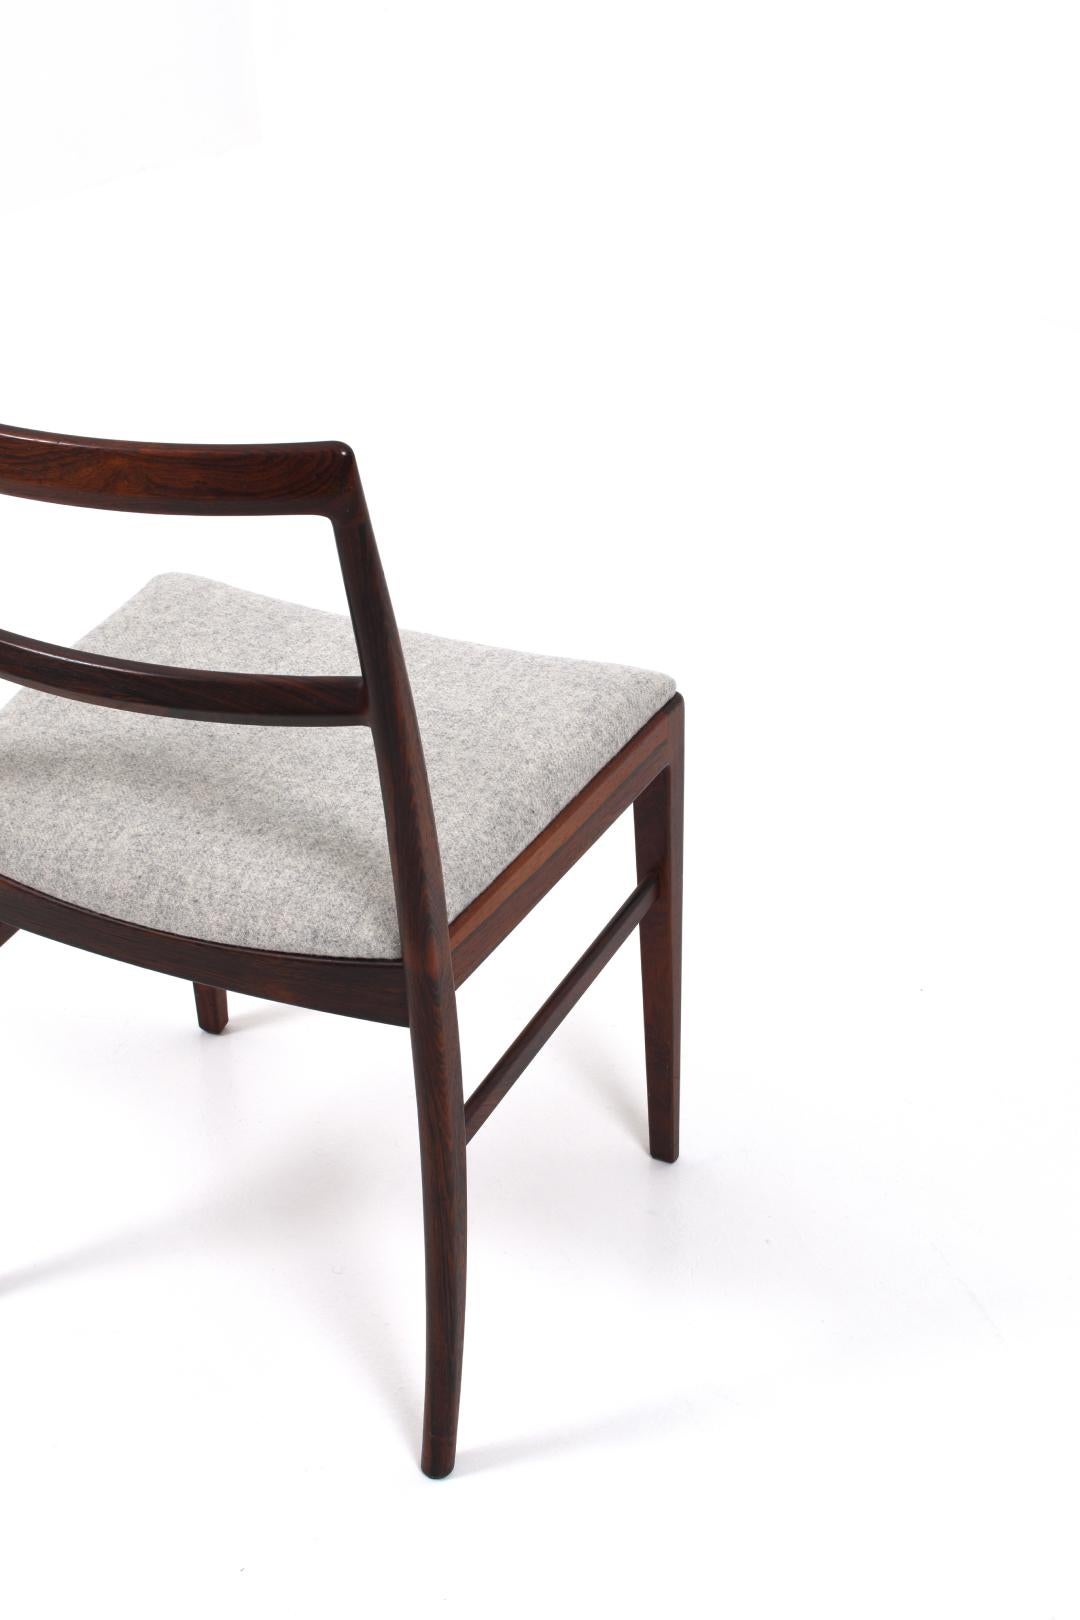 Arne Vodder Model 430 Dining Chairs for Sibast Møbler, set of 4 For Sale 2